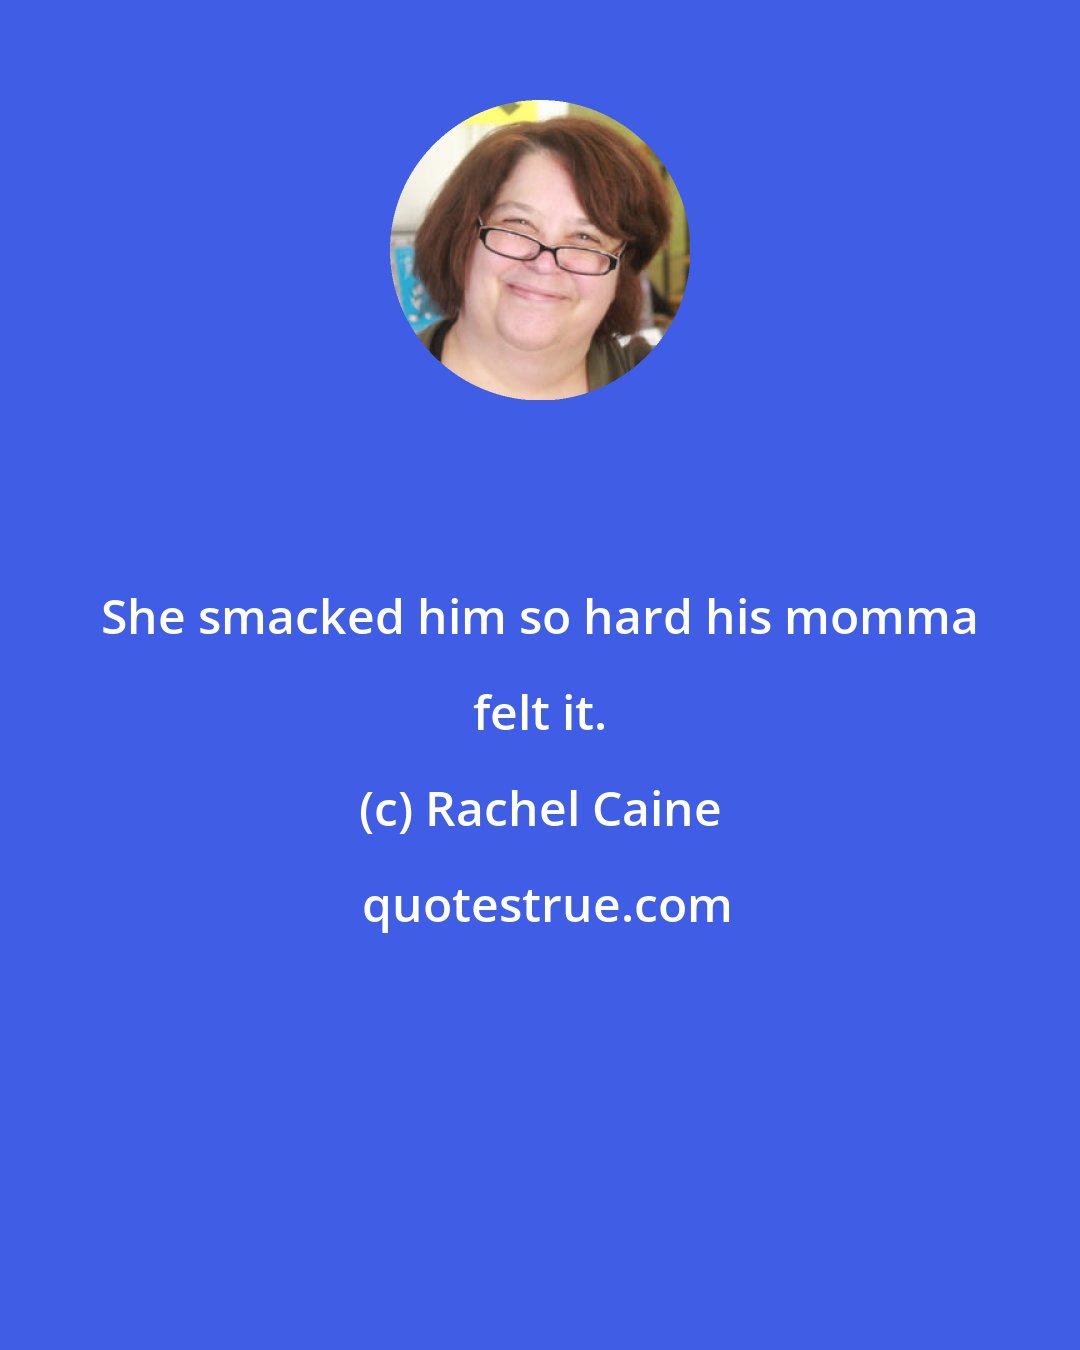 Rachel Caine: She smacked him so hard his momma felt it.